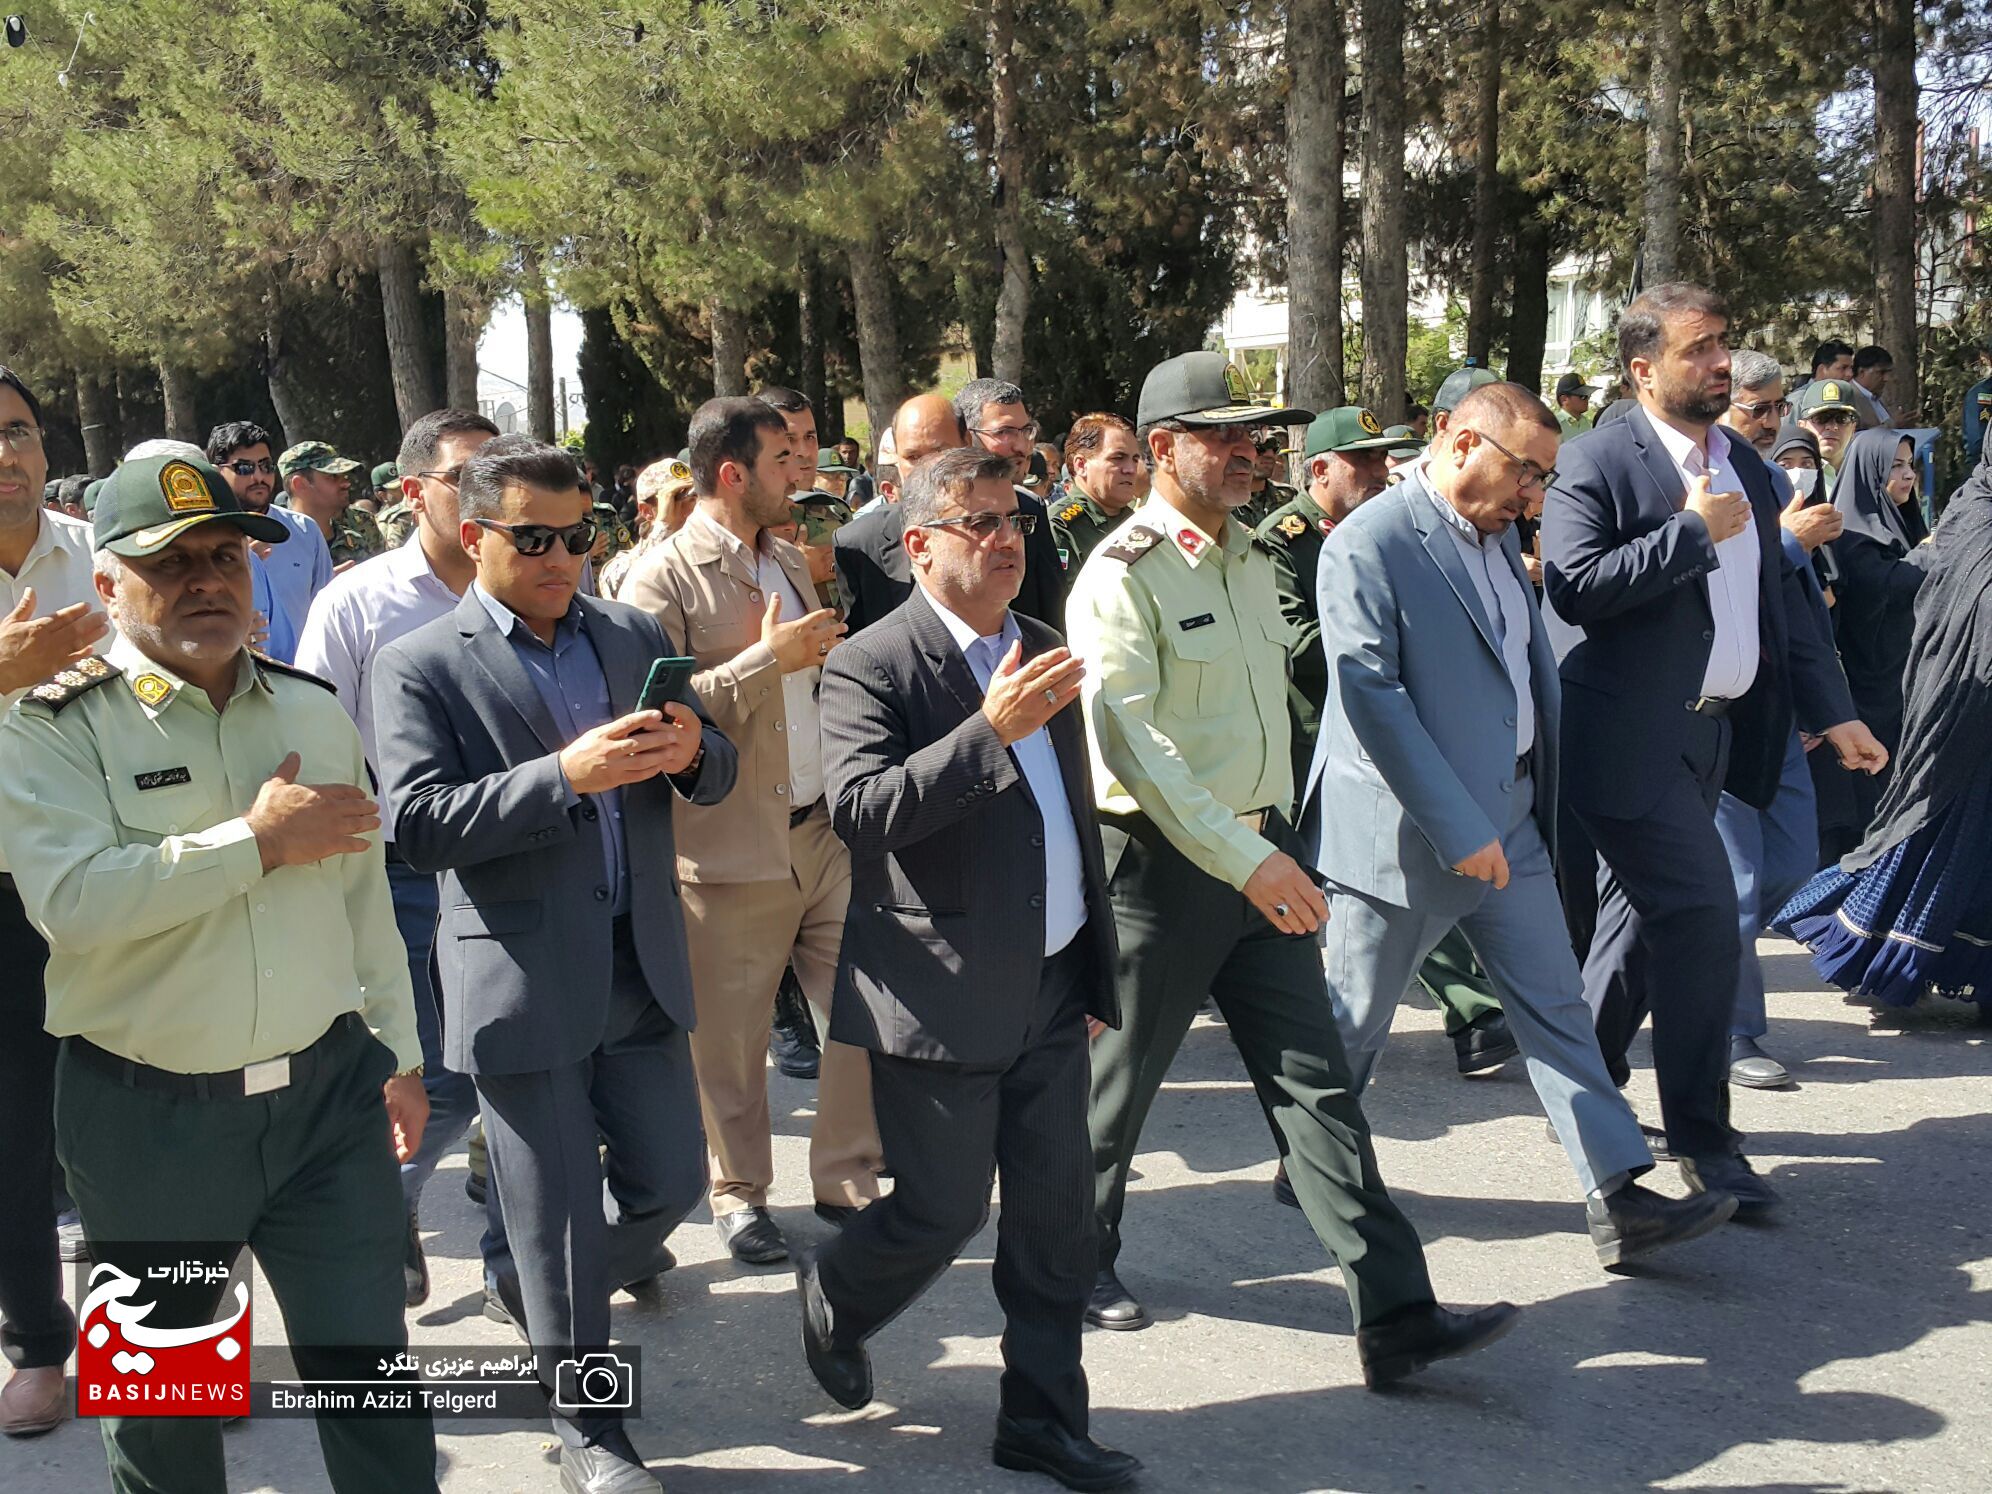 مراسم تشییع باشکوه شهید مدافع امنیت در یاسوج از دریچه دوربین خبرنگار بسیج + ( تصاویر )